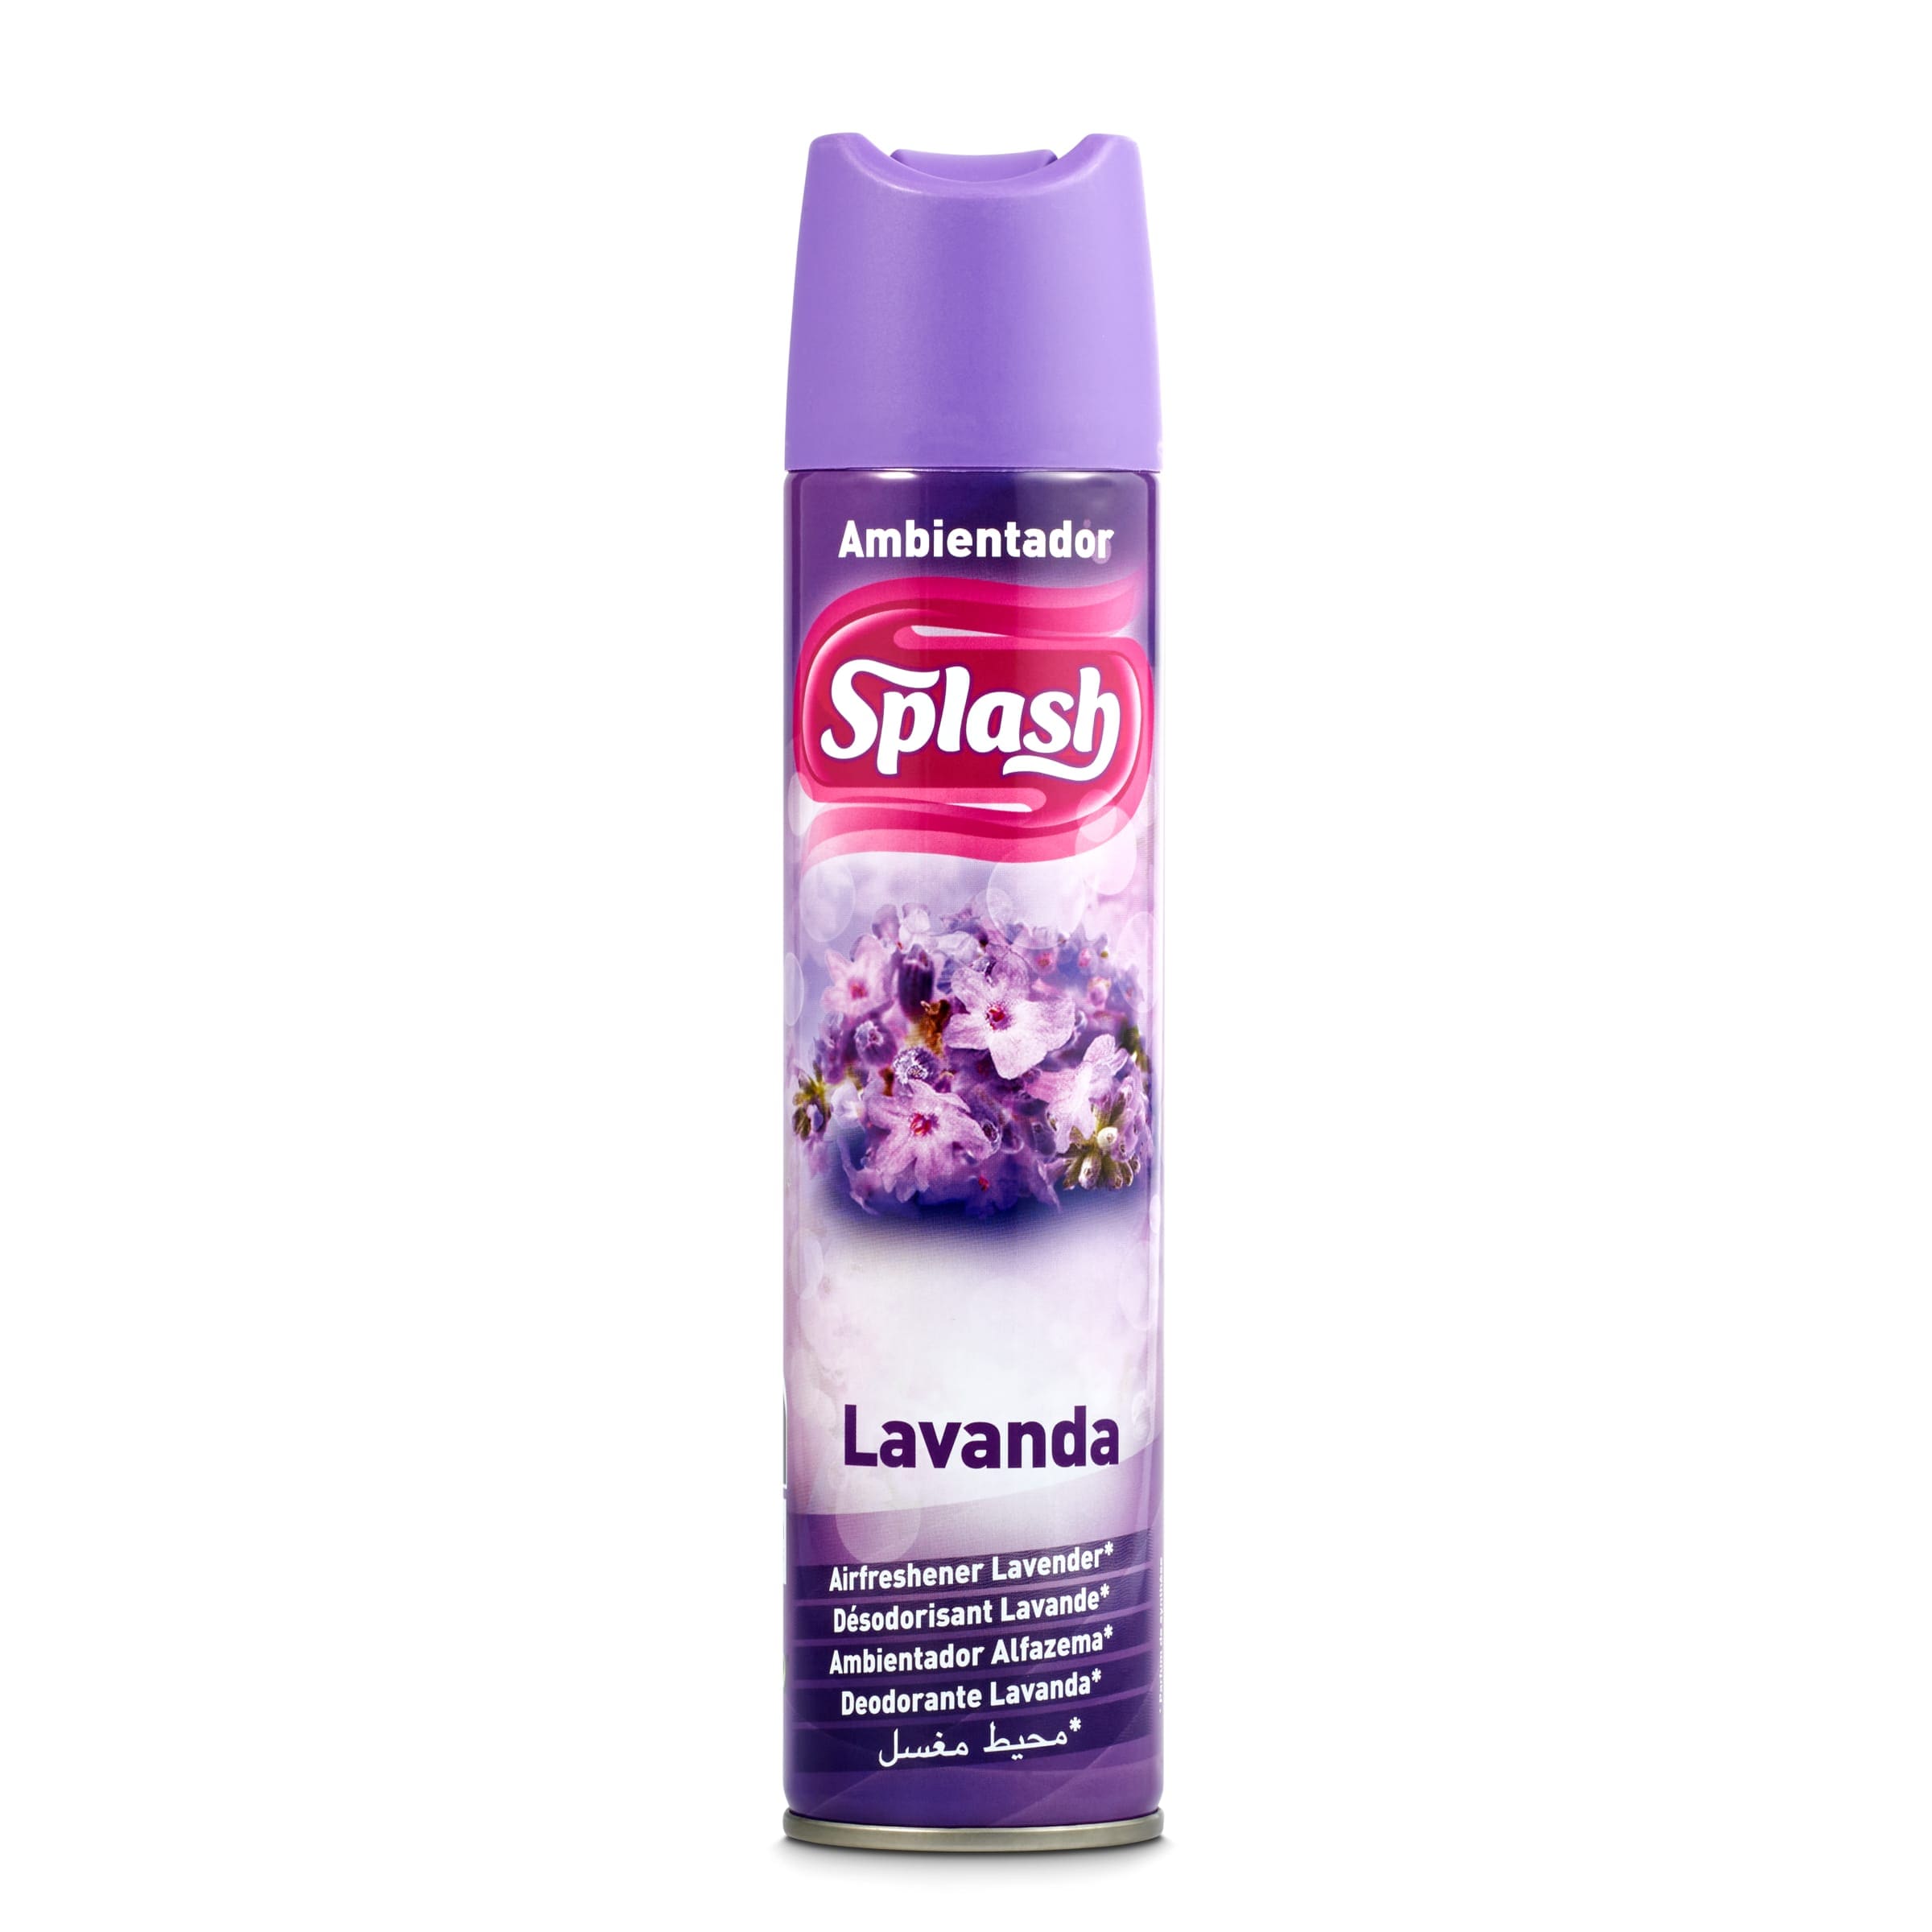 Ambientador ropa limpia Splash spray 300 ml por 1,30 de Dia |  Preciosdesupers.es